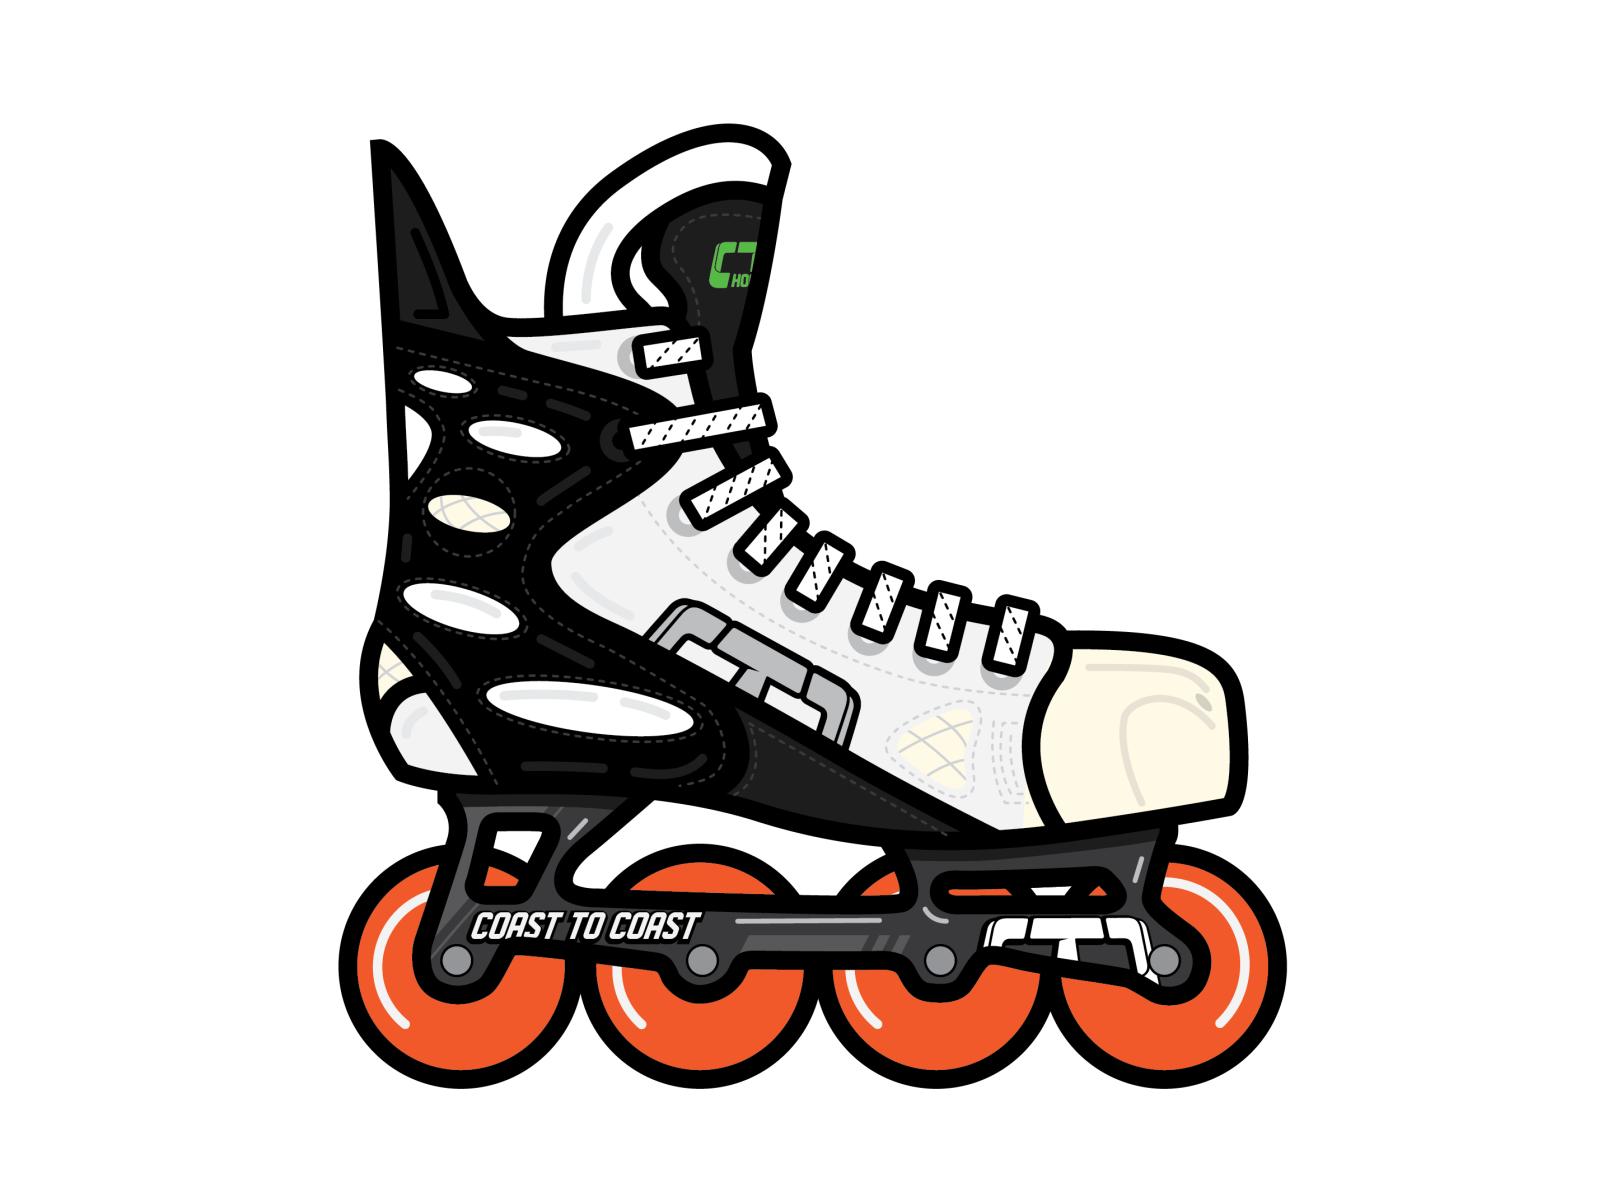 Nike Retro Roller Hockey Skate - to Coast Tony Headrick on Dribbble